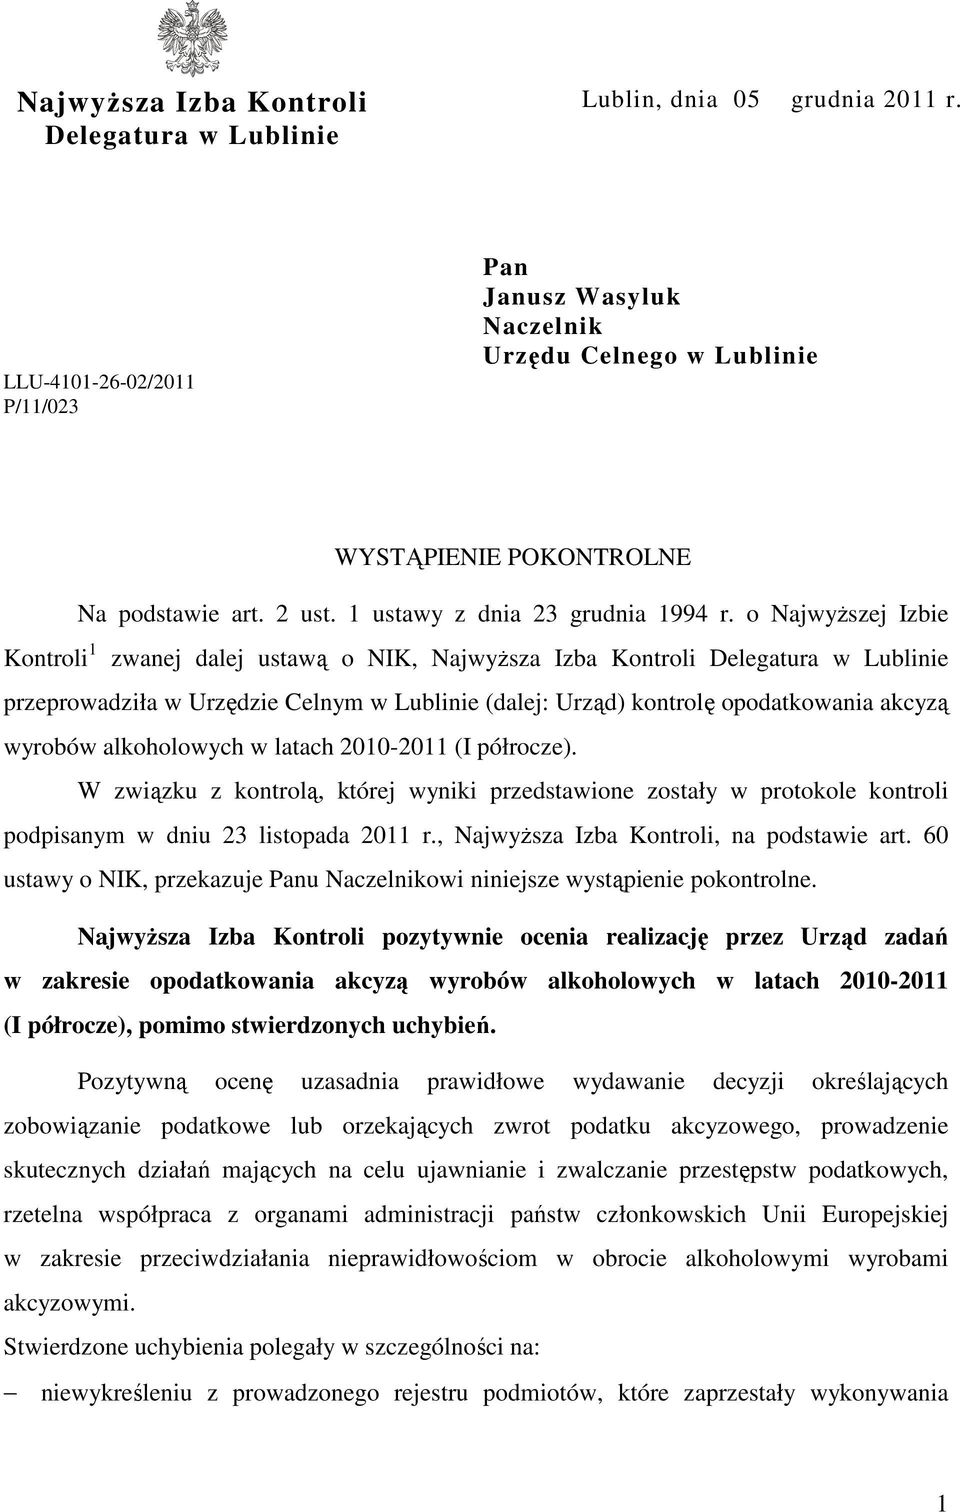 o Najwyższej Izbie Kontroli 1 zwanej dalej ustawą o NIK, Najwyższa Izba Kontroli Delegatura w Lublinie przeprowadziła w Urzędzie Celnym w Lublinie (dalej: Urząd) kontrolę opodatkowania akcyzą wyrobów